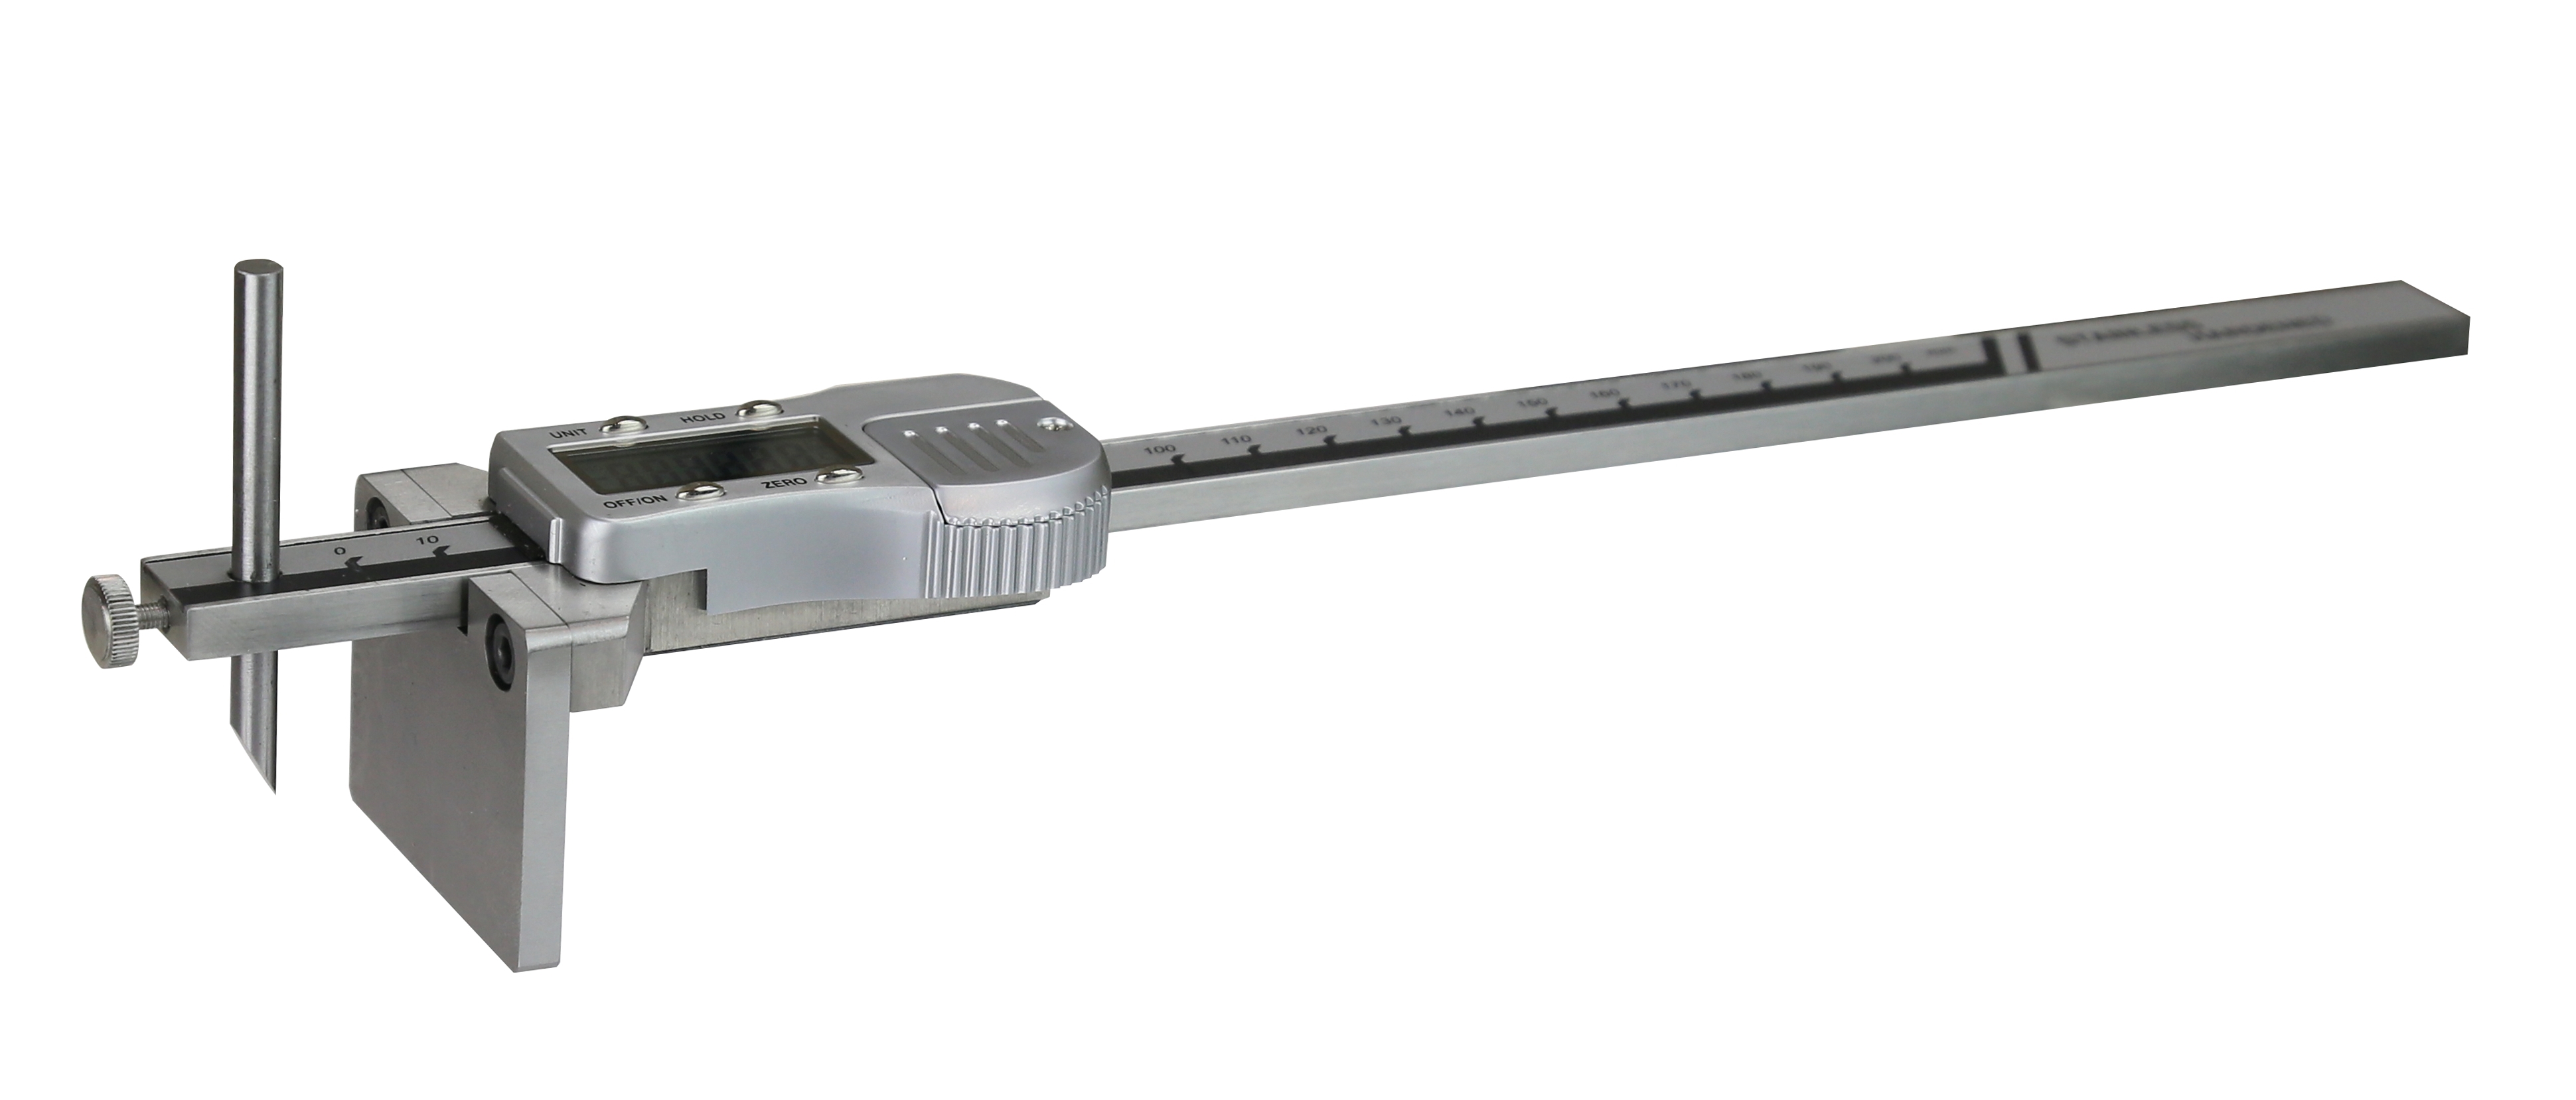 Messbereich 0-300mm 0,1mm Ablesung Präzisions Streichmaß rostfreier Stahl 